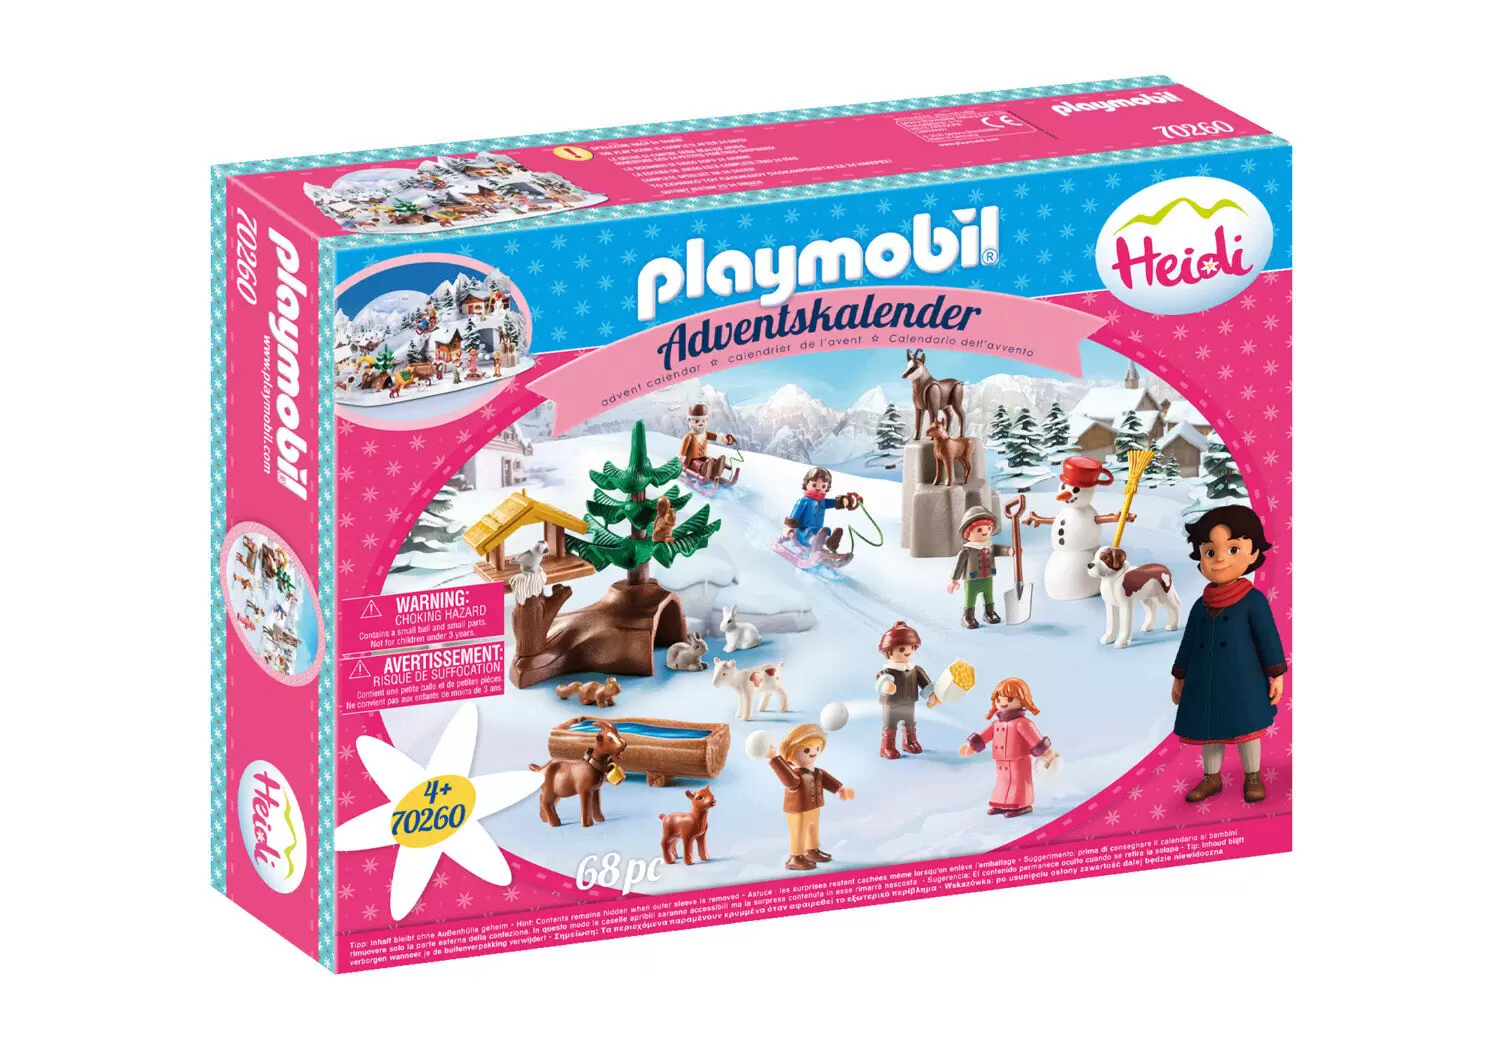 Playmobil - PLAYMOBIL 70383 - Calendrier de l'Avent Père Noël dans